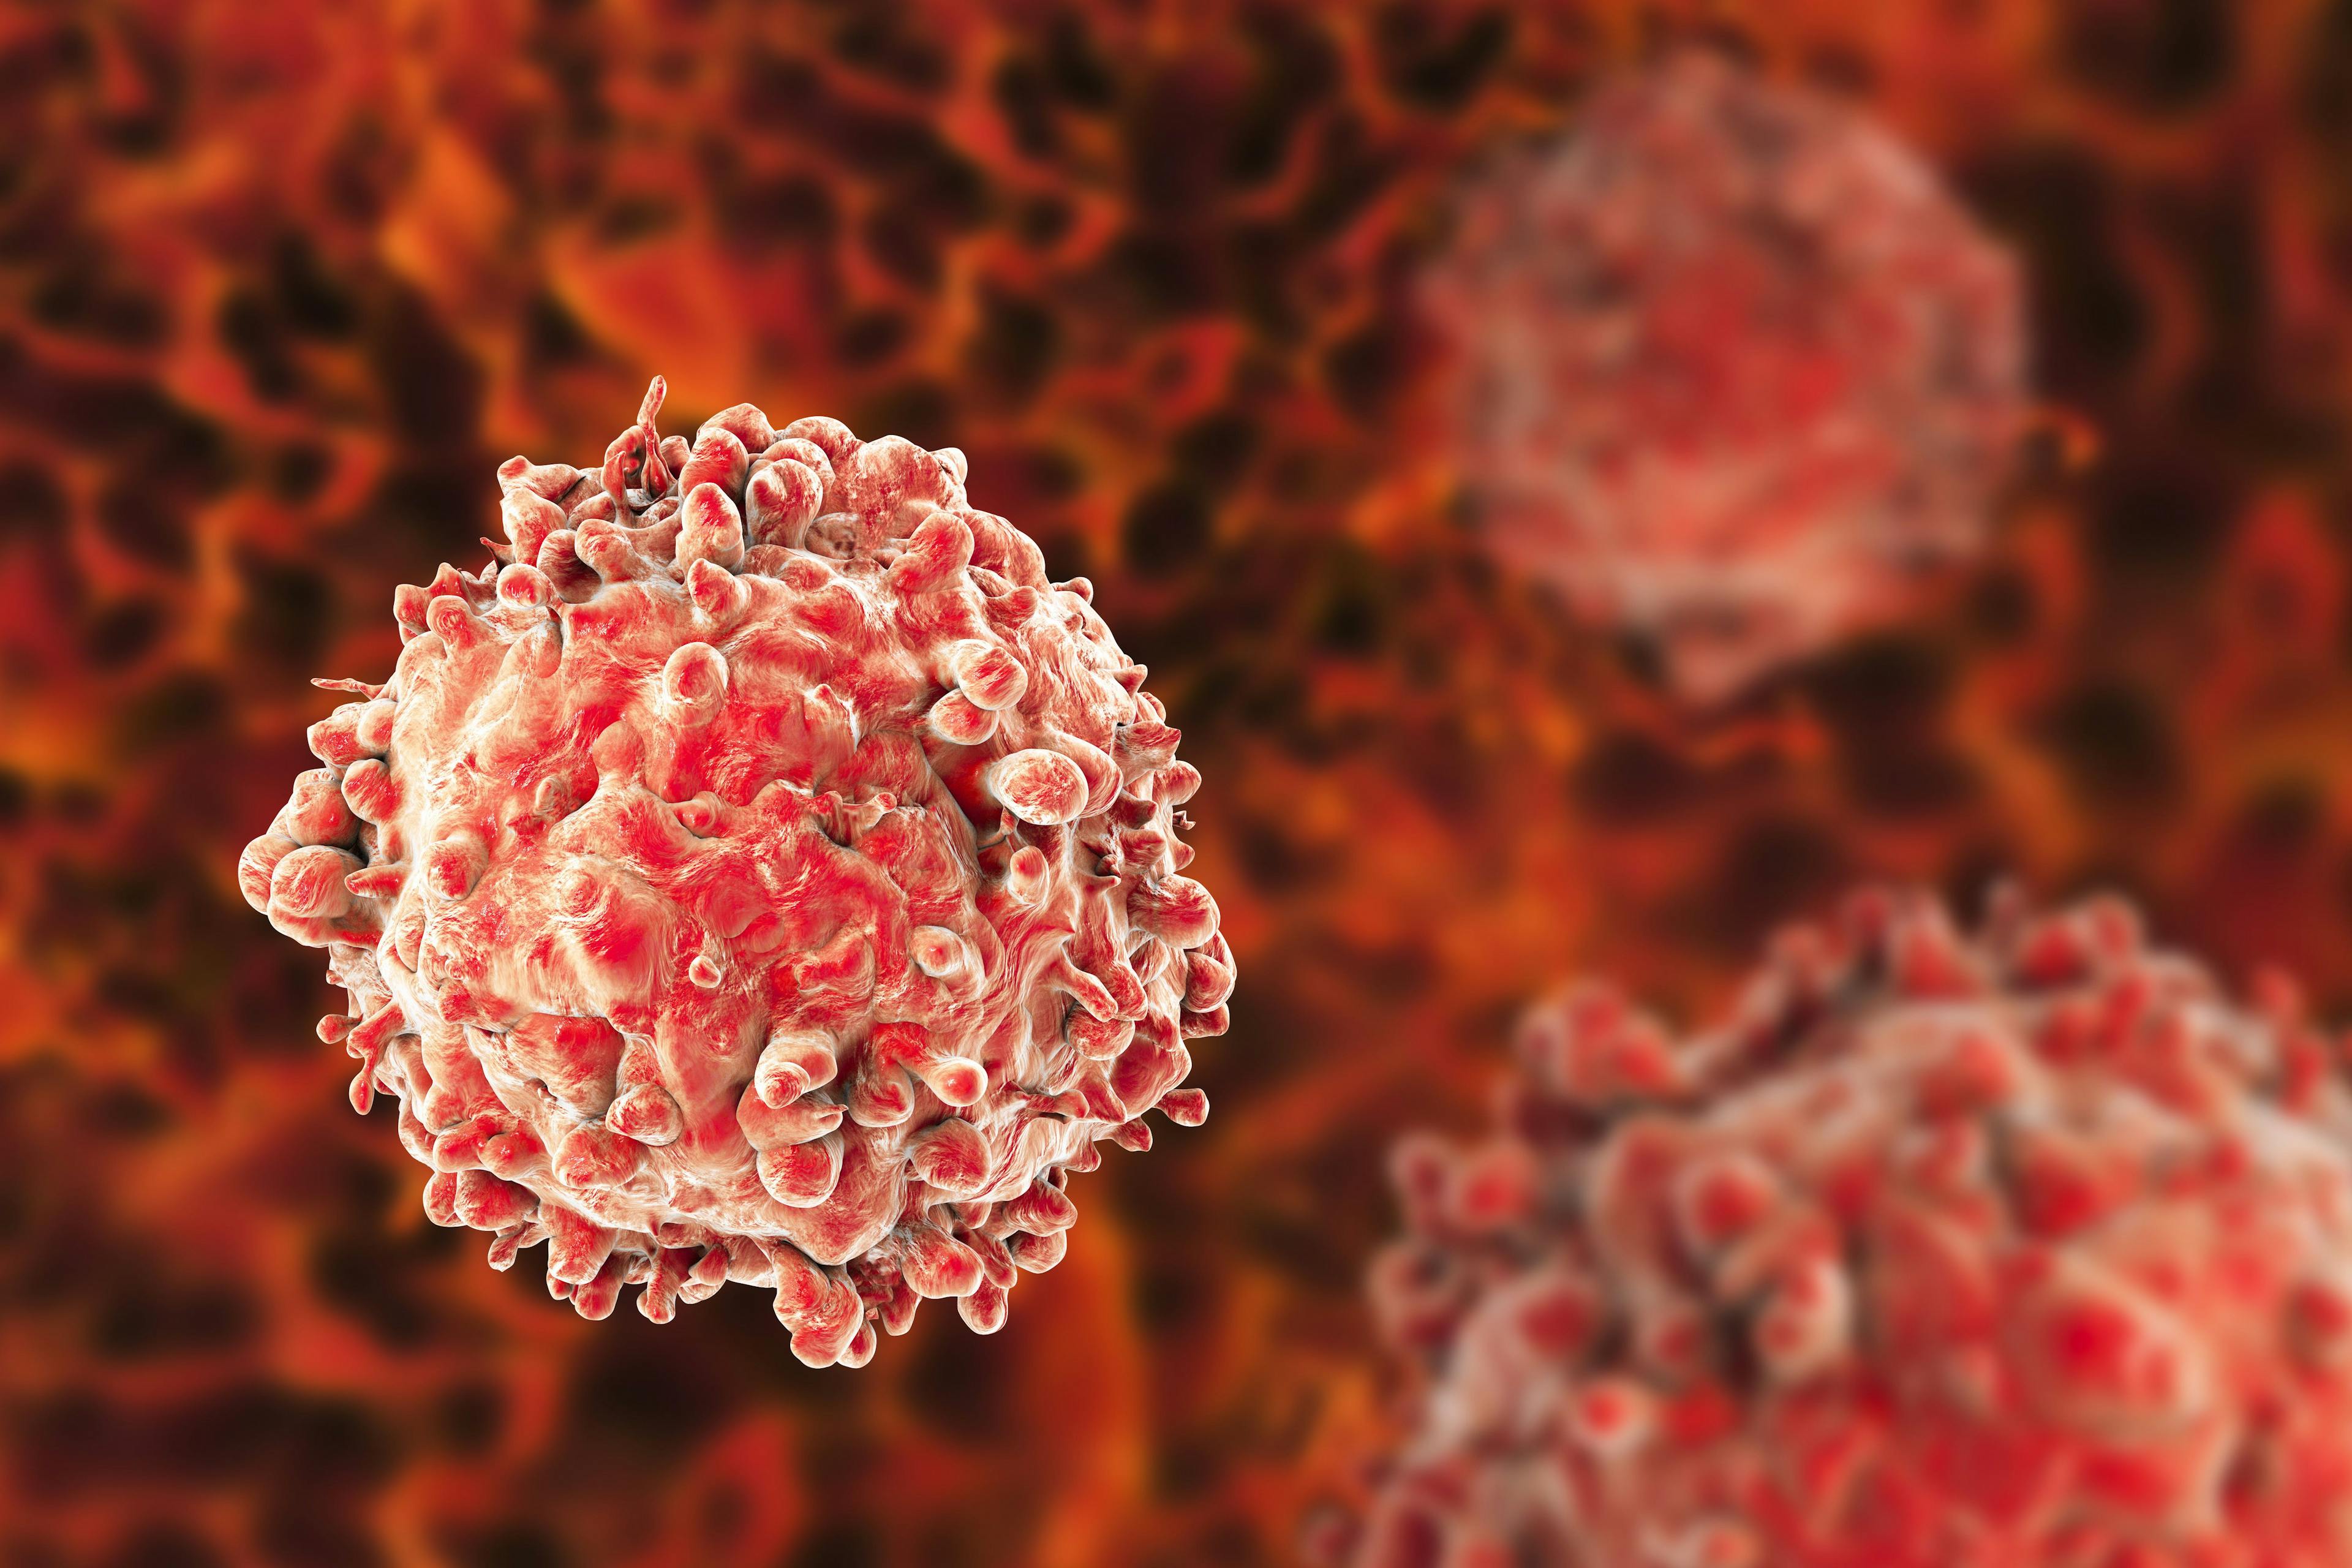 T-Cell Acute Lymphoblastic Leukemia